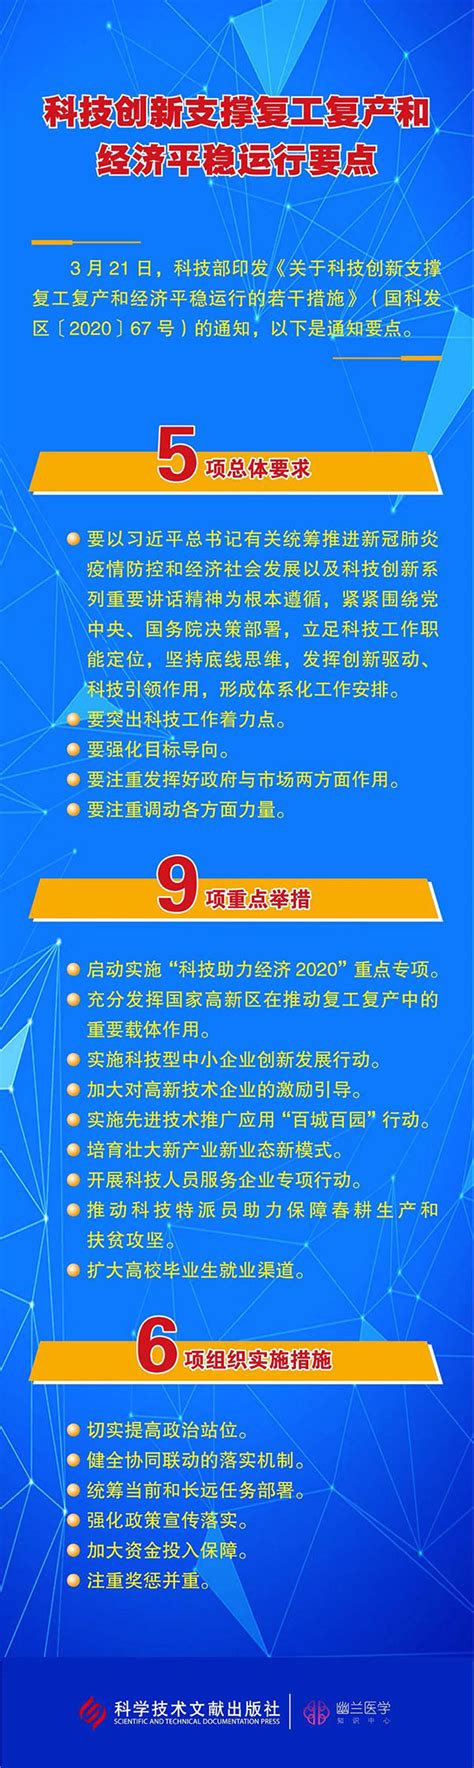 《2023年武汉市科技创新工作要点》发布 - 党员新闻|公司党员新闻|党员活动 - 金开瑞